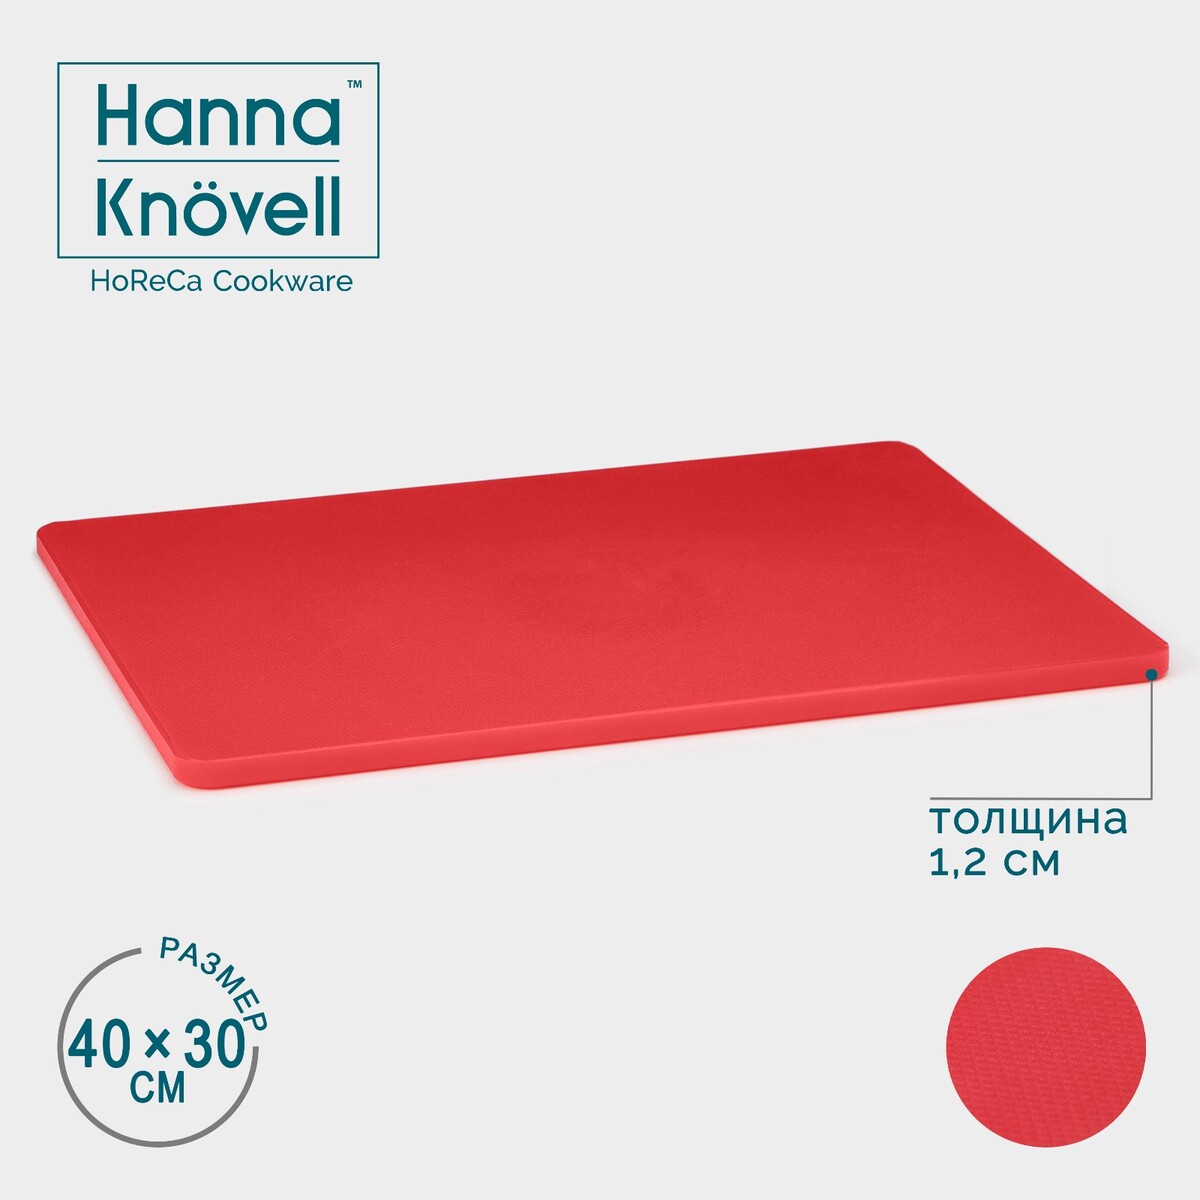 Доска профессиональная разделочная hanna knövell, 40×30×1,2 см, цвет красный